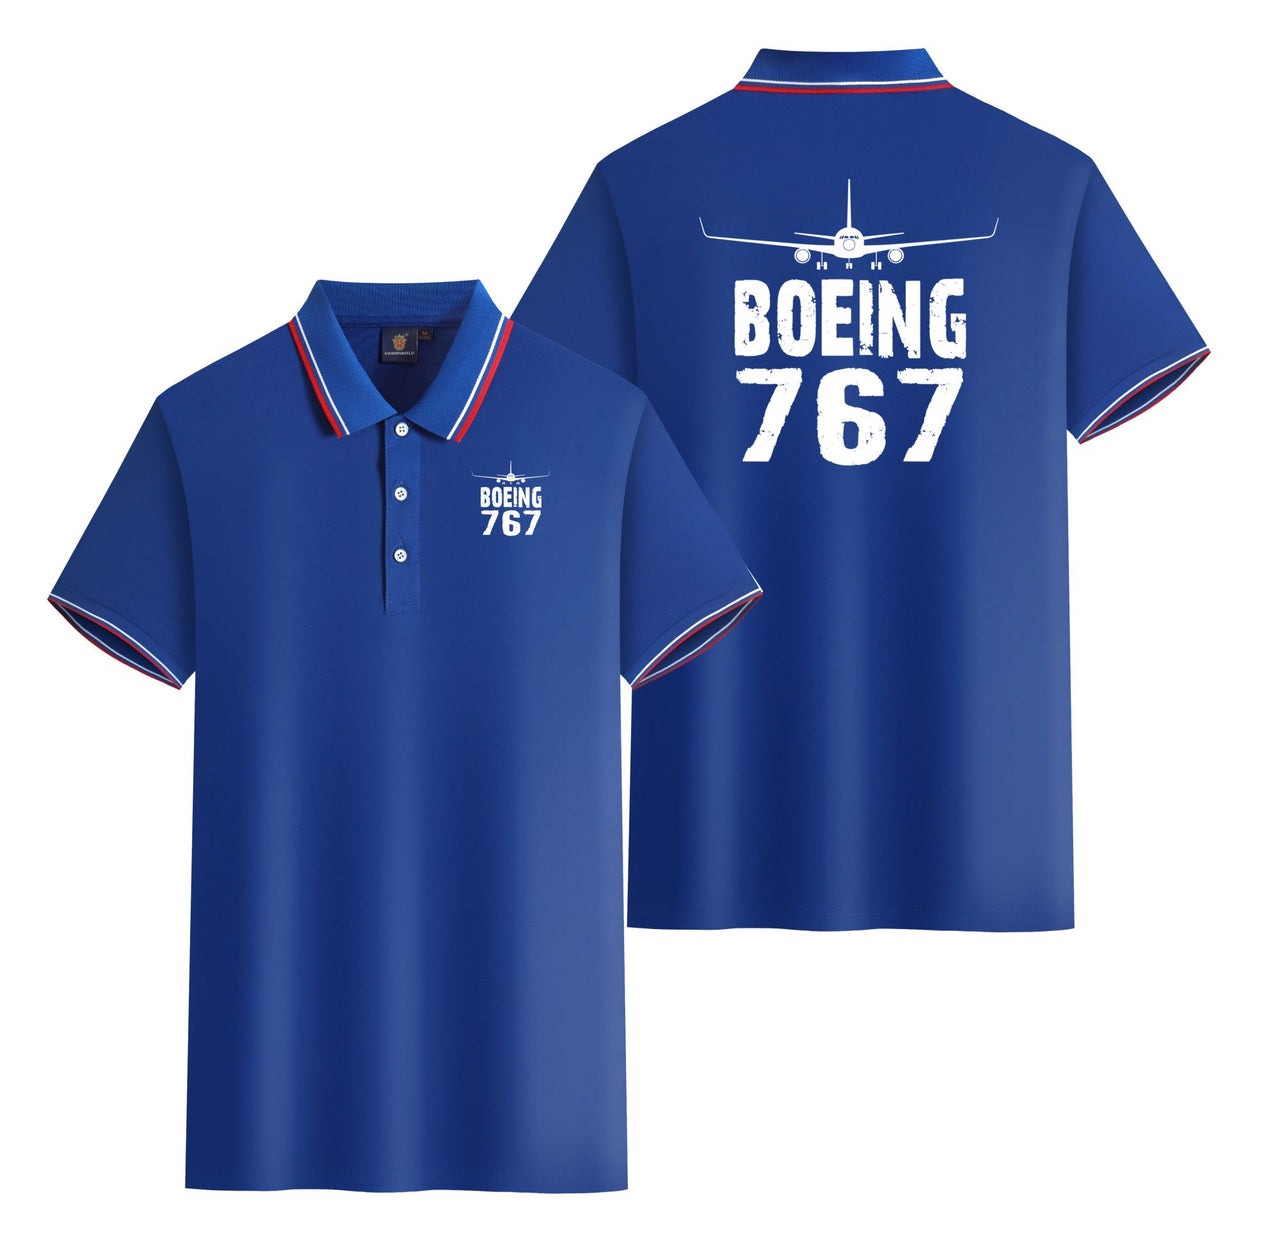 Boeing 767 & Plane Designed Stylish Polo T-Shirts (Double-Side)